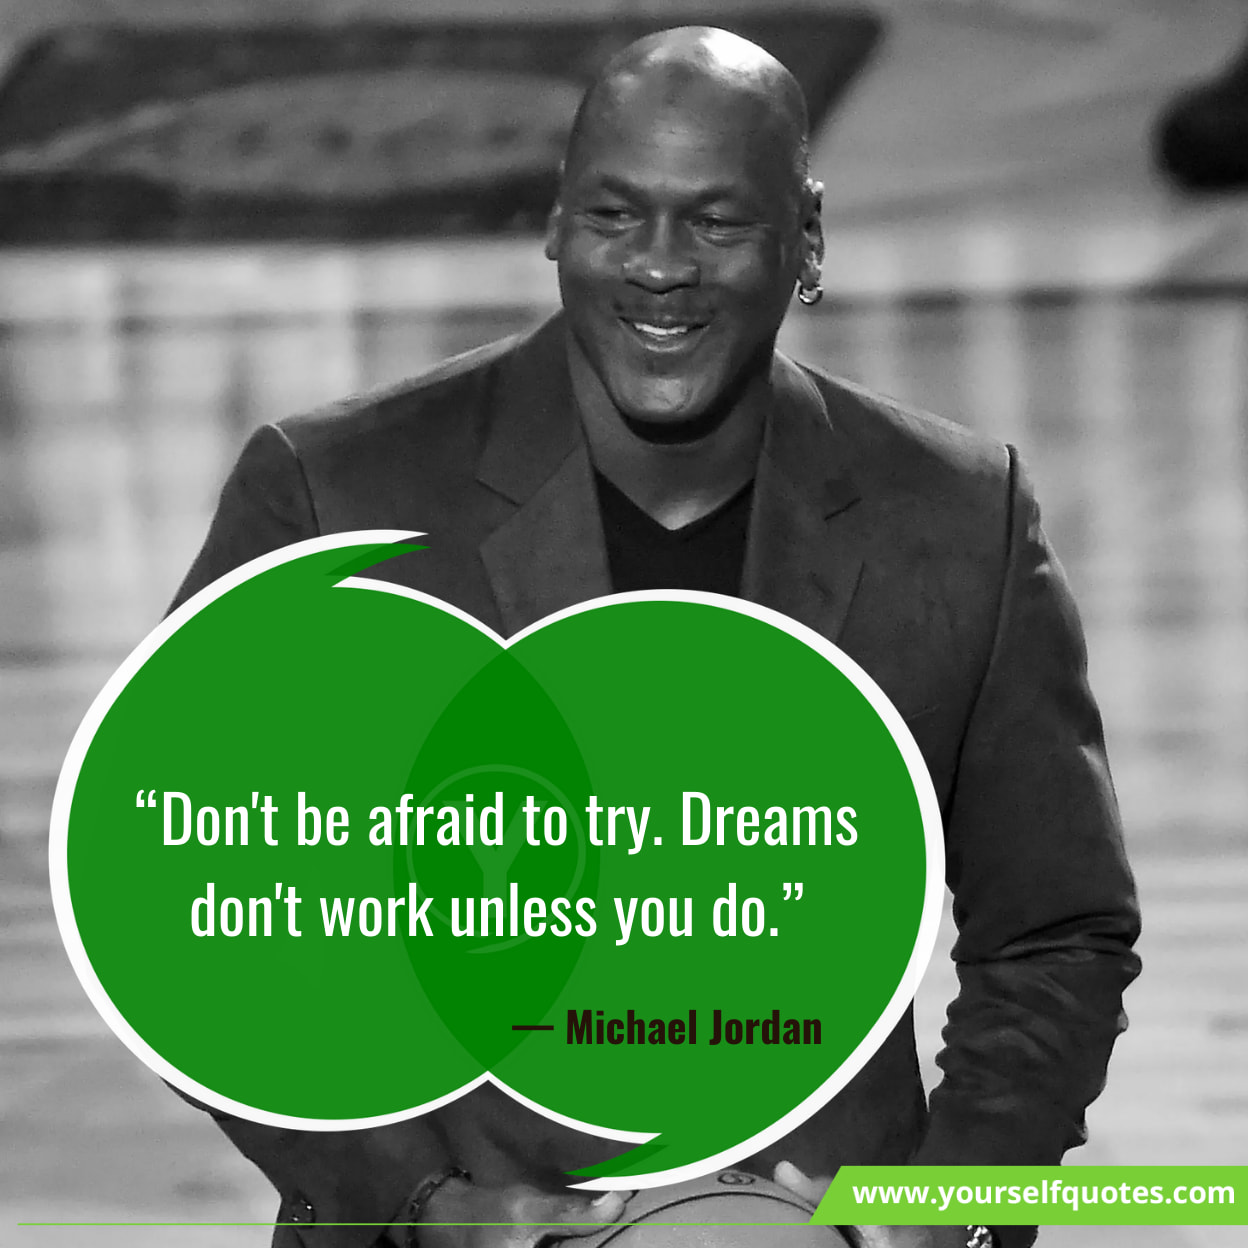 Michael Jordan Quotes About Dreams